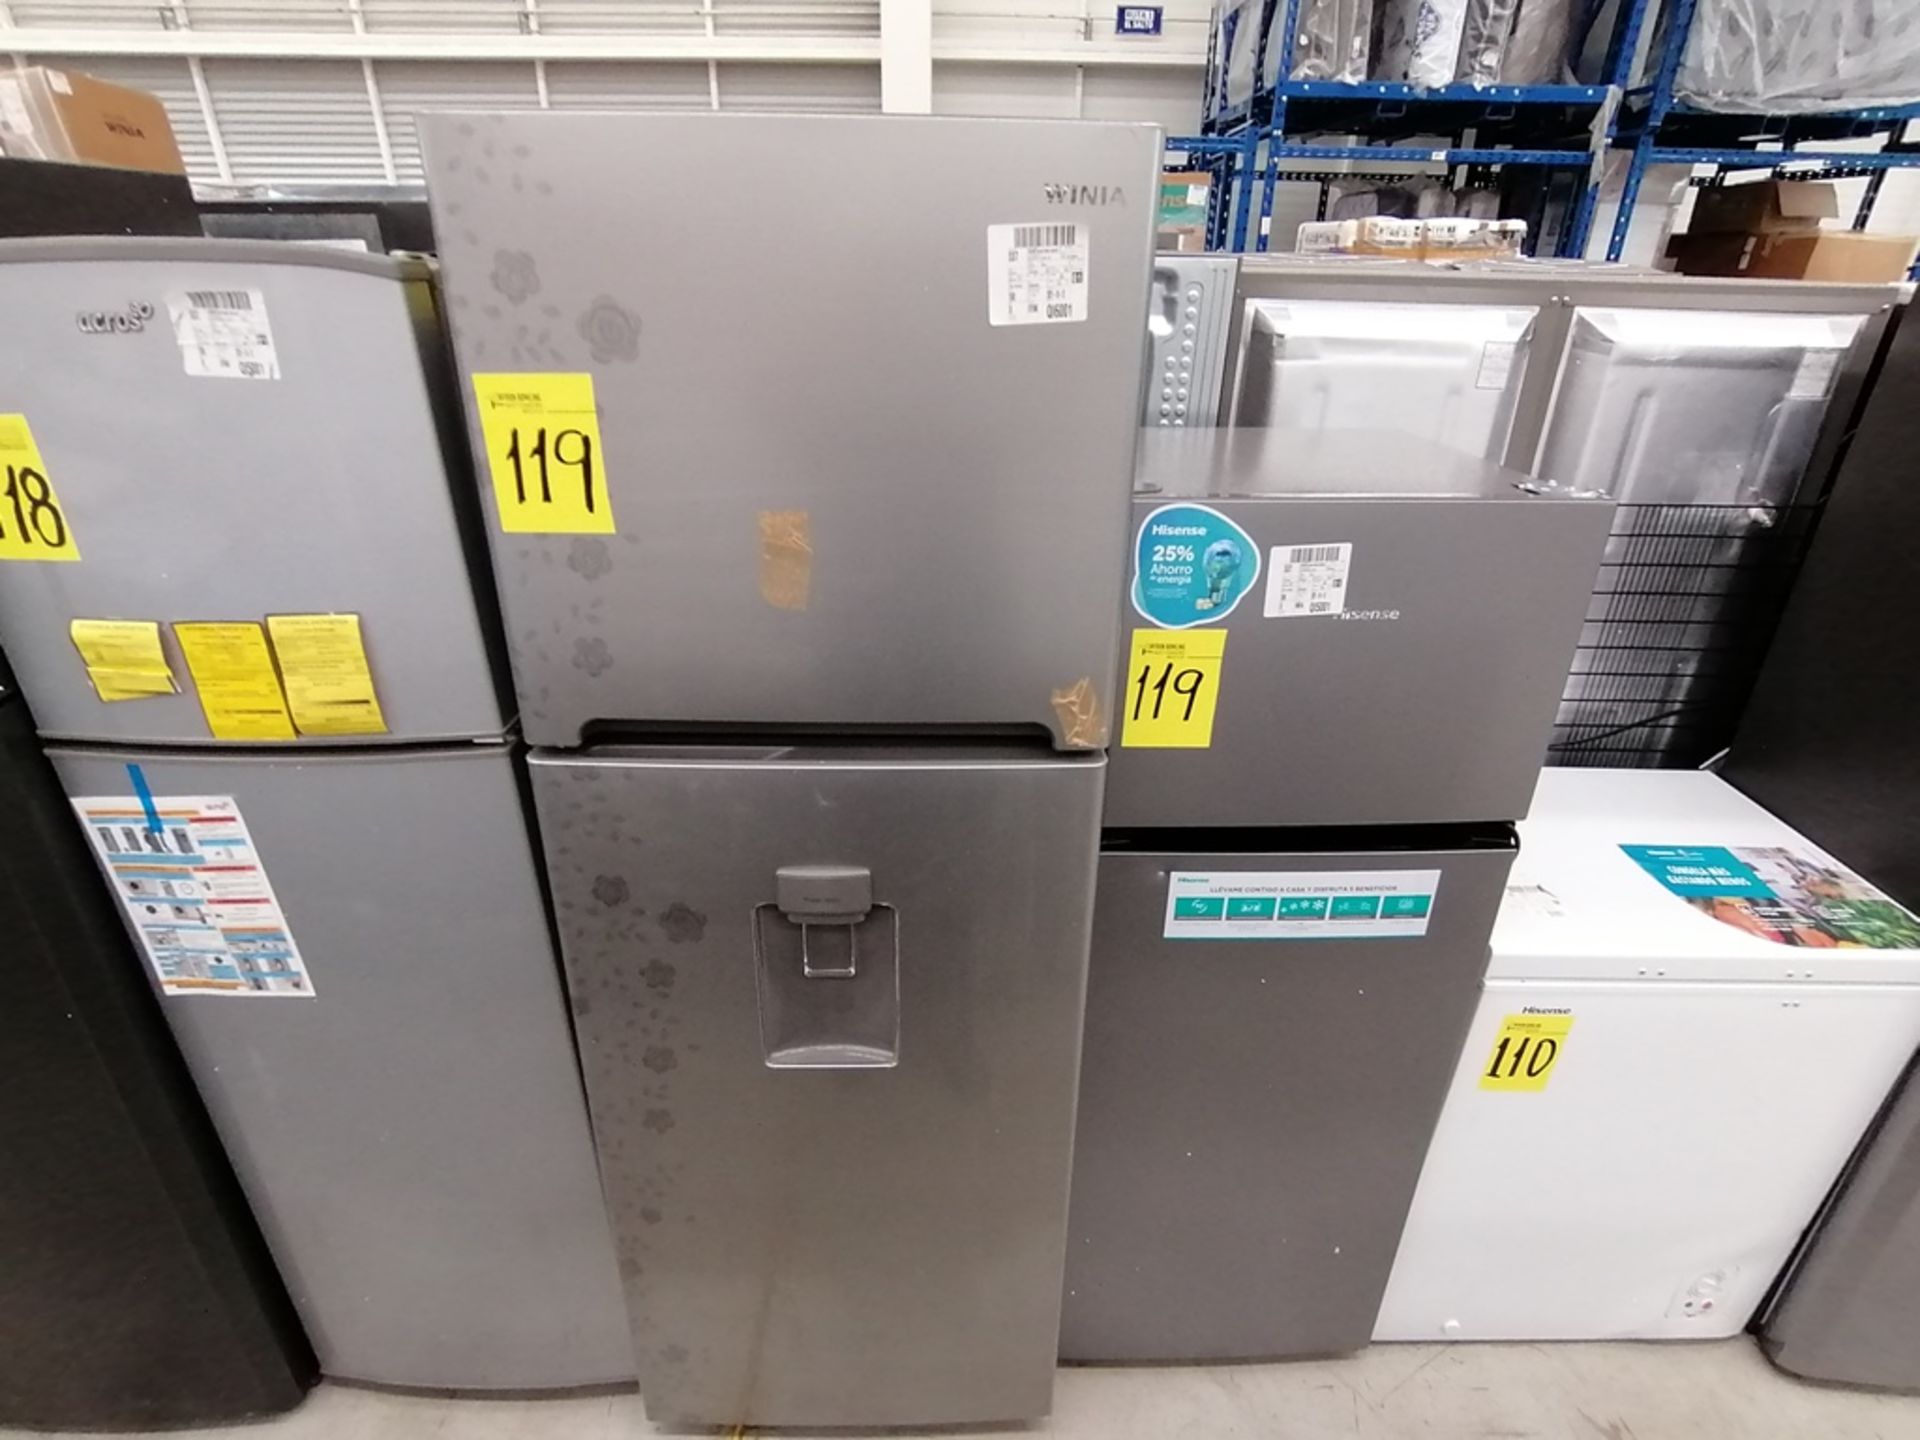 Lote de 2 refrigeradores incluye: 1 Refrigerador, Marca Winia, Modelo DFR40510GNDG, Serie MR21YN107 - Image 12 of 15